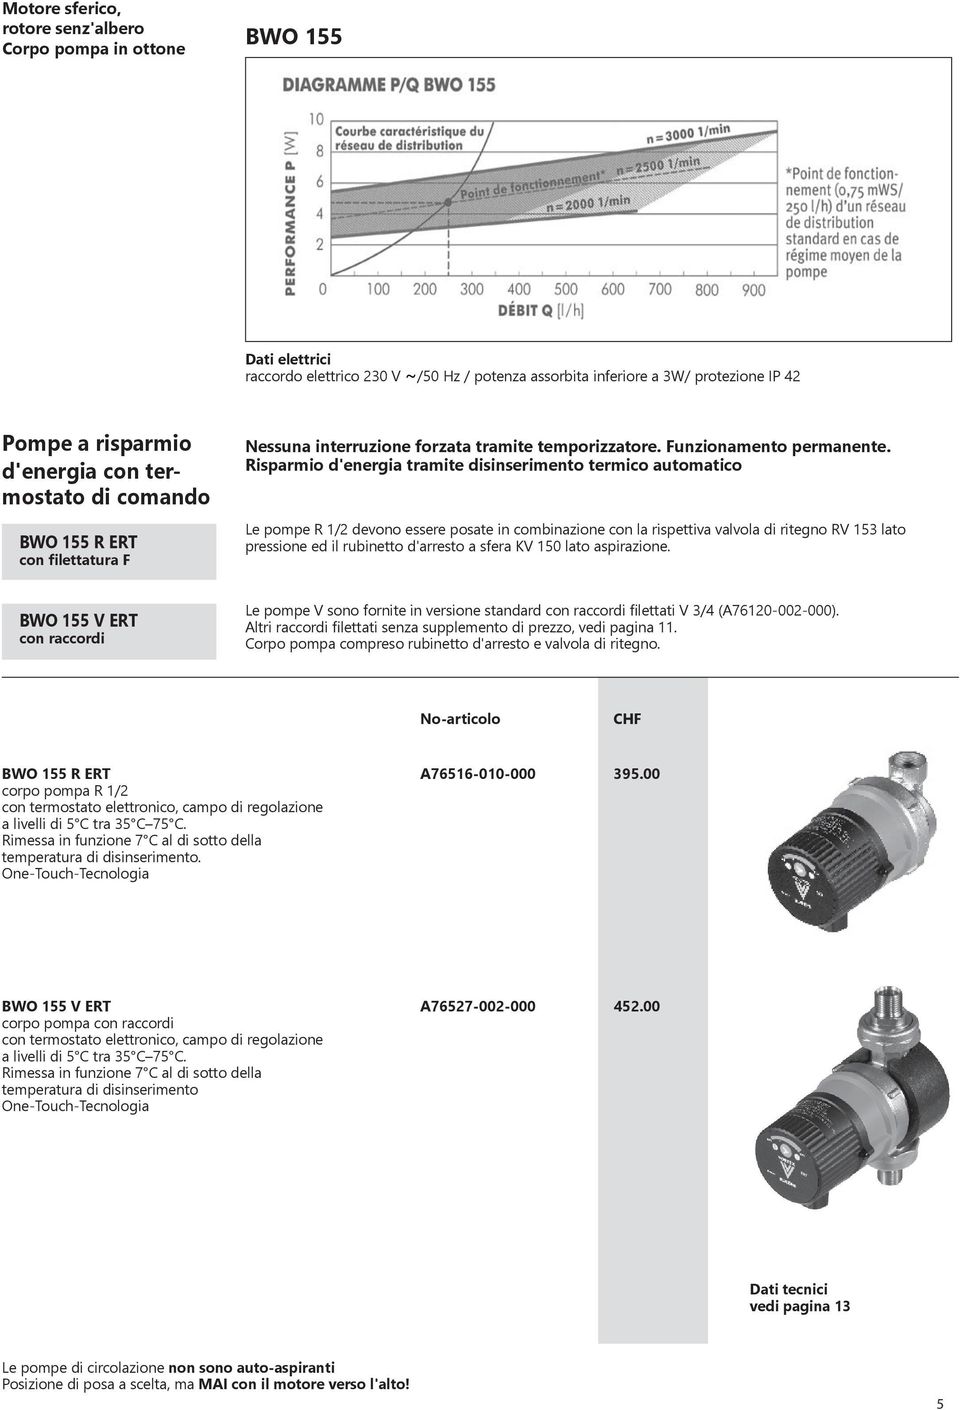 Risparmio d'energia tramite disinserimento termico automatico Le pompe R 1/2 devono essere posate in combinazione con la rispettiva valvola di ritegno RV 153 lato pressione ed il rubinetto d'arresto